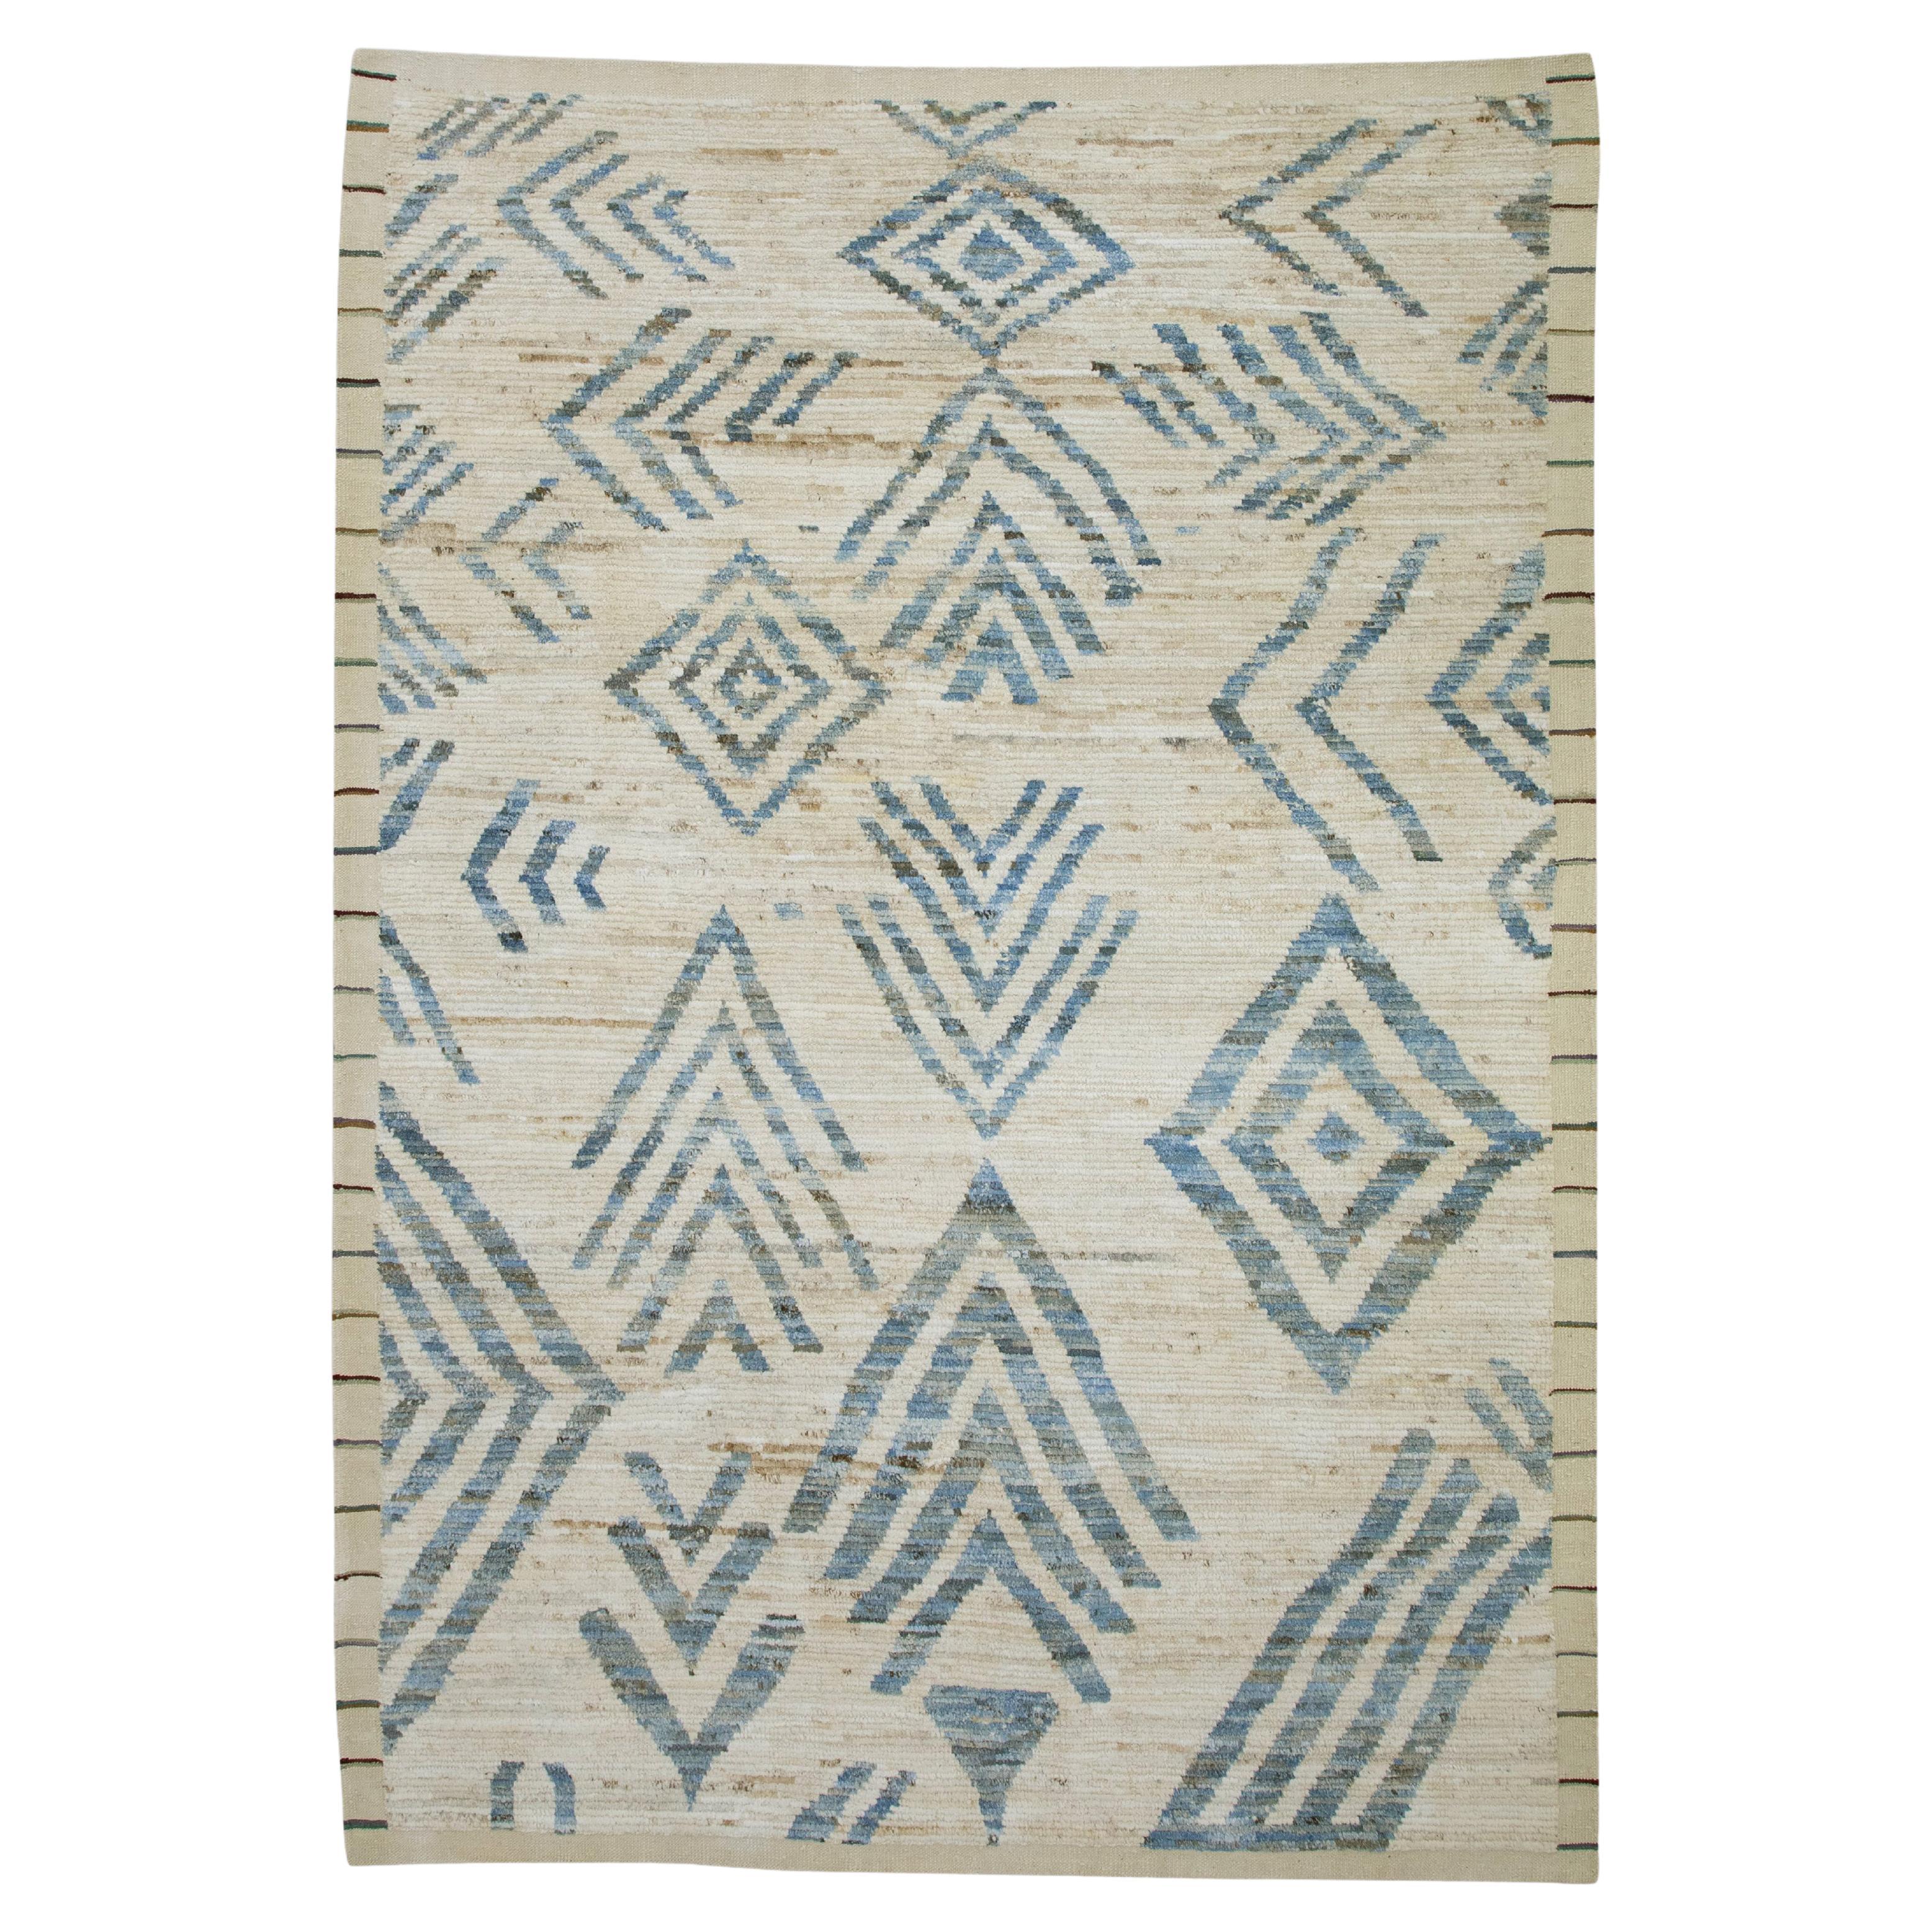 Handgefertigter moderner türkischer Teppich aus Wolle in Beige & Blau in geometrischem Design 6'4" x 9'3"